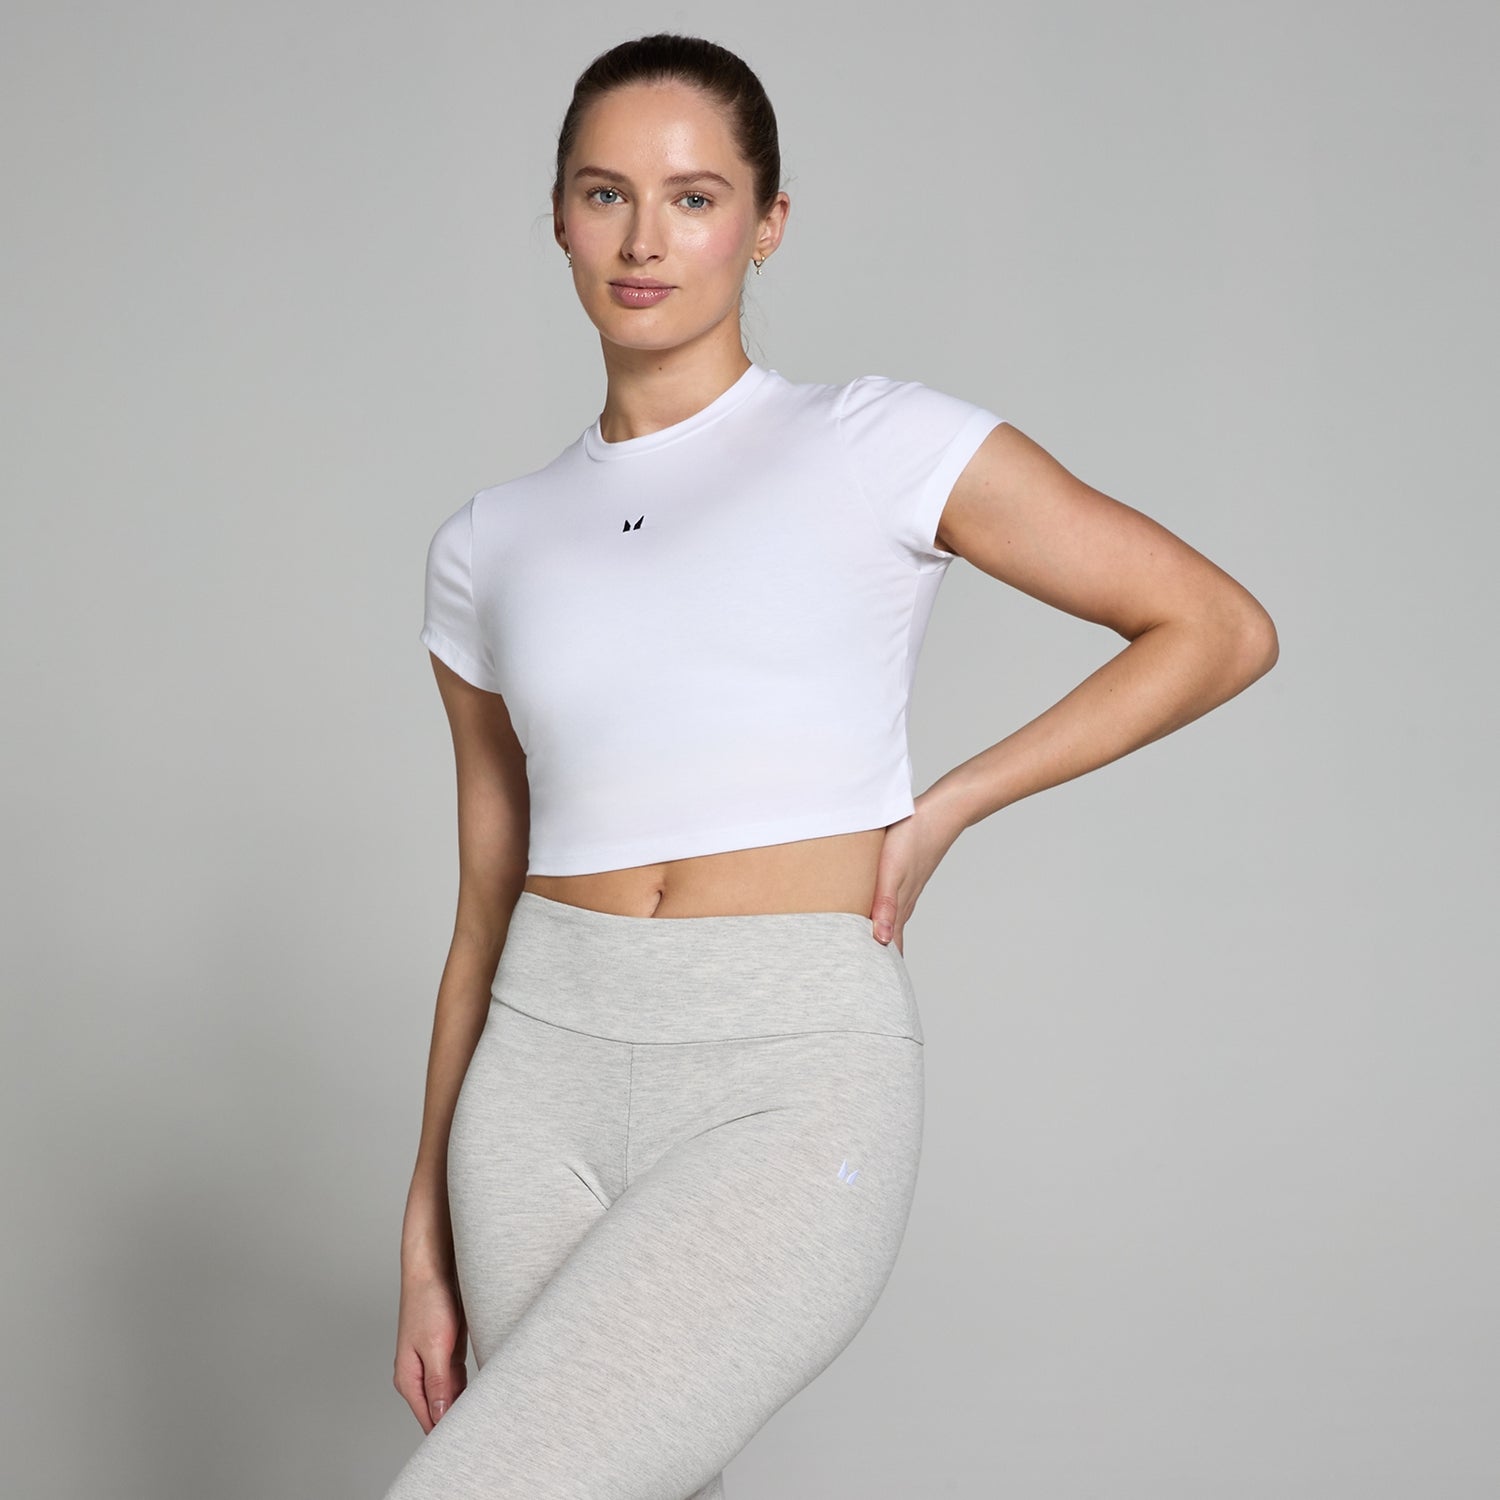 Женская укороченная облегающая футболка с короткими рукавами MP Basics — белый цвет - XXS